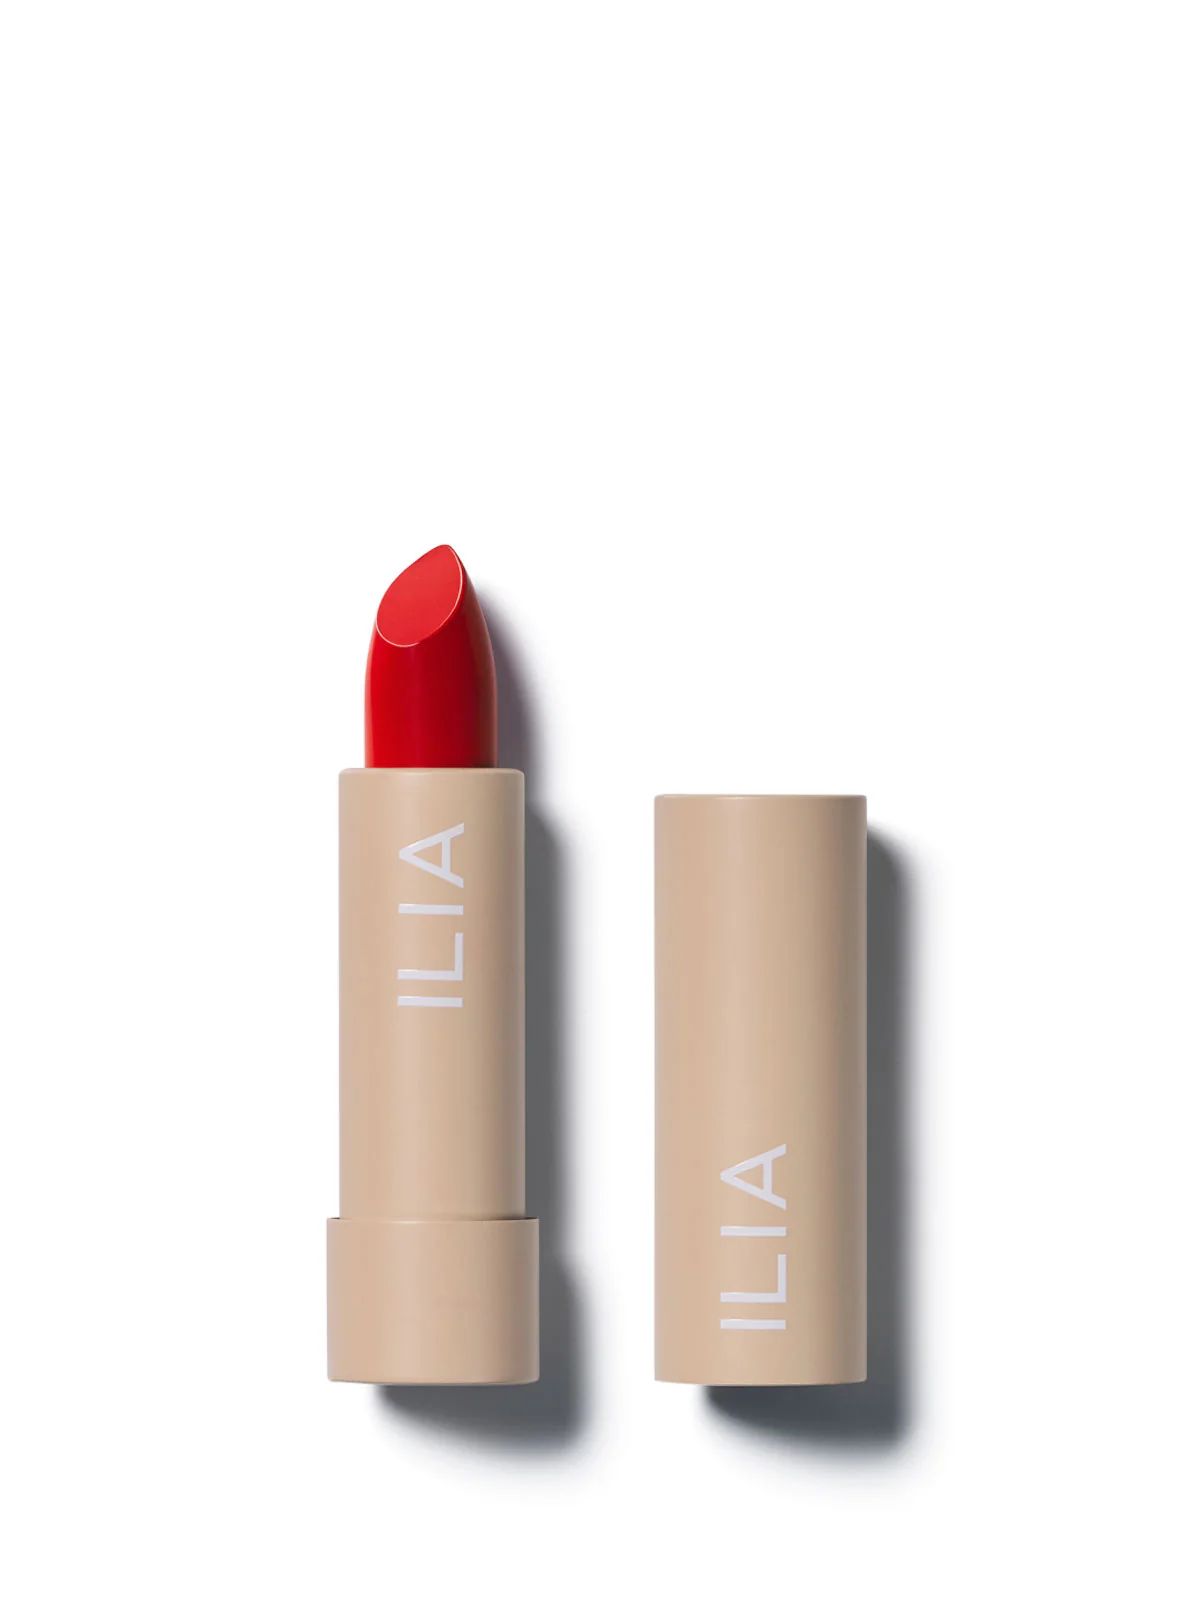 Fire Red Lipstick: Flame | ILIA Beauty | ILIA Beauty